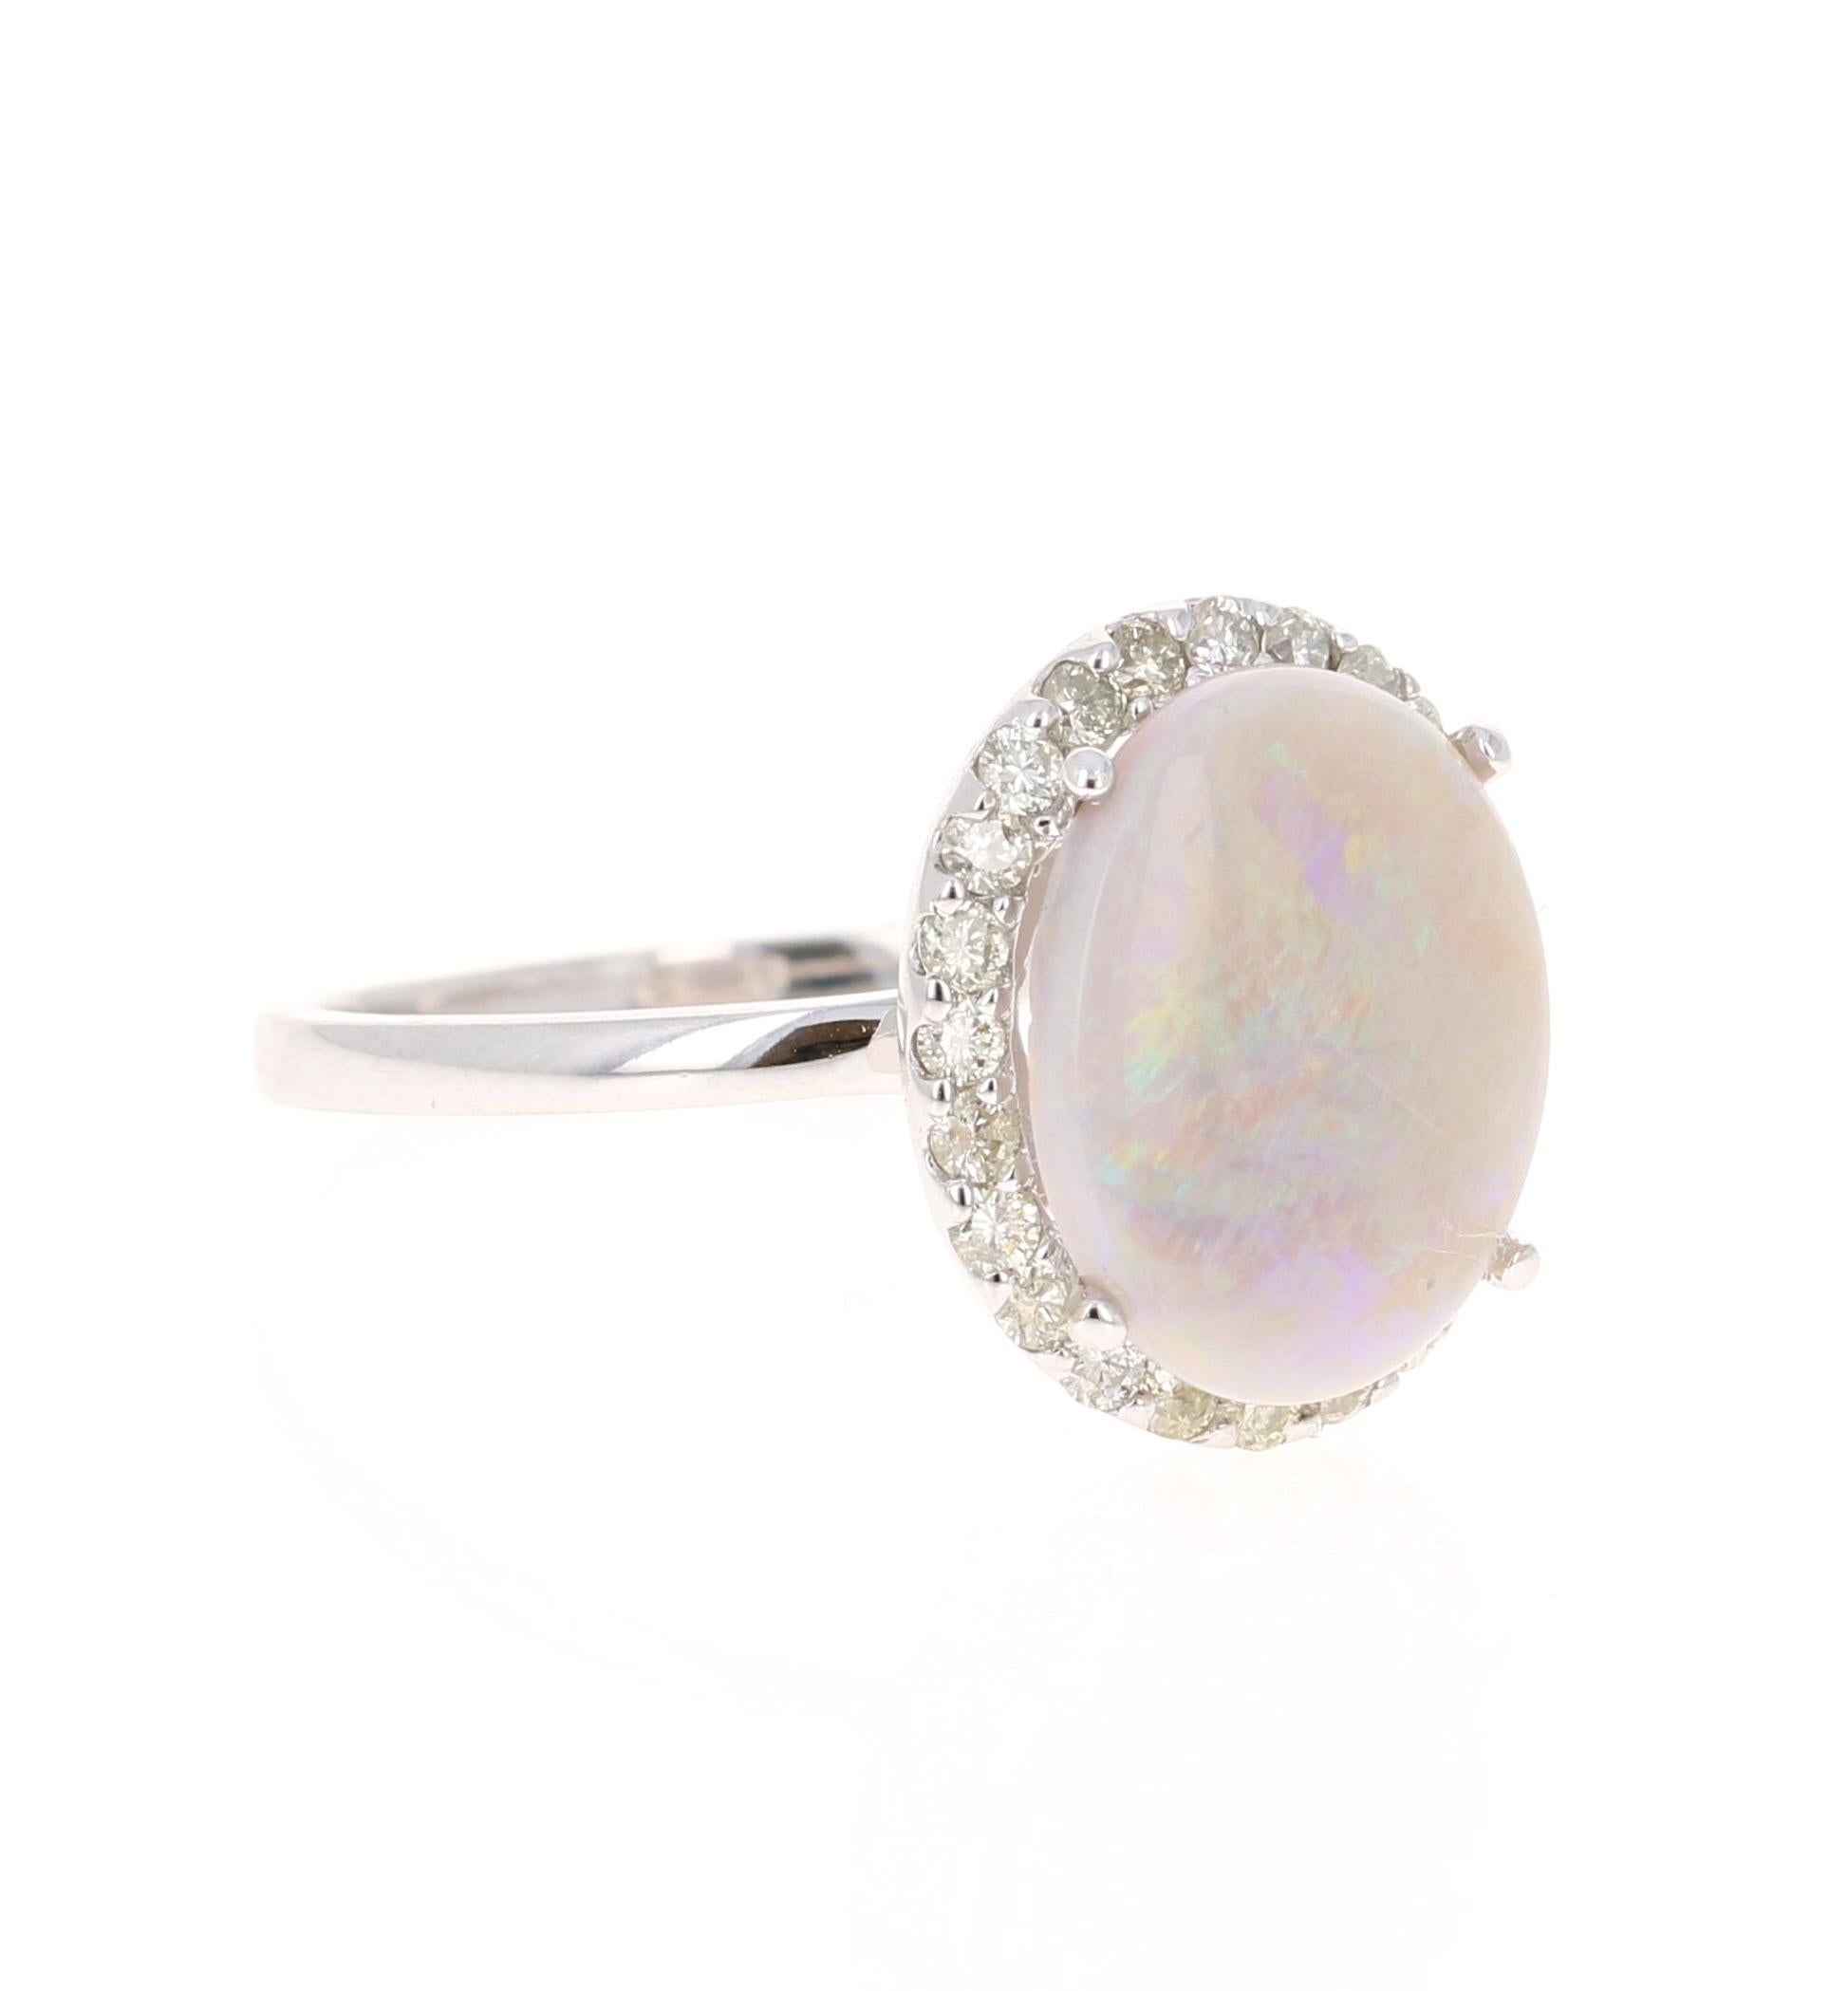 Dieser Ring hat einen einfachen 2,23 Karat Opal und 24 Diamanten im Rundschliff mit einem Gewicht von 0,40 Karat. Das Gesamtkaratgewicht des Rings beträgt 2,63 Karat. 

Der Opal misst bei  11 mm x 13 mm (Breite x Länge) 

Der Opal ist